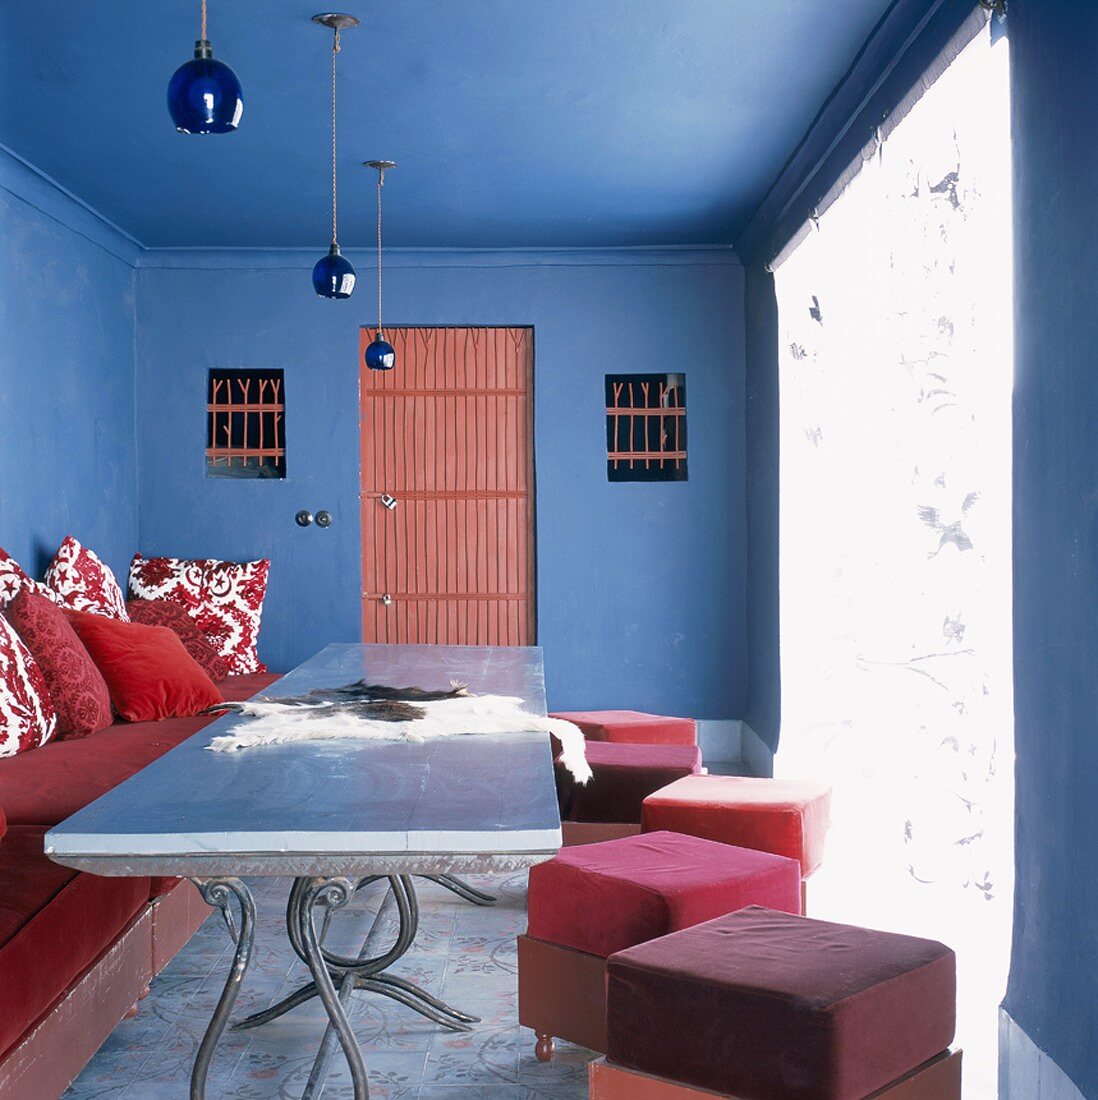 Schlichte, rote Polstermöbel an einem antiken Metalltisch bilden einen starken Kontrast zu dem blauen, traditionellen Wohnraum